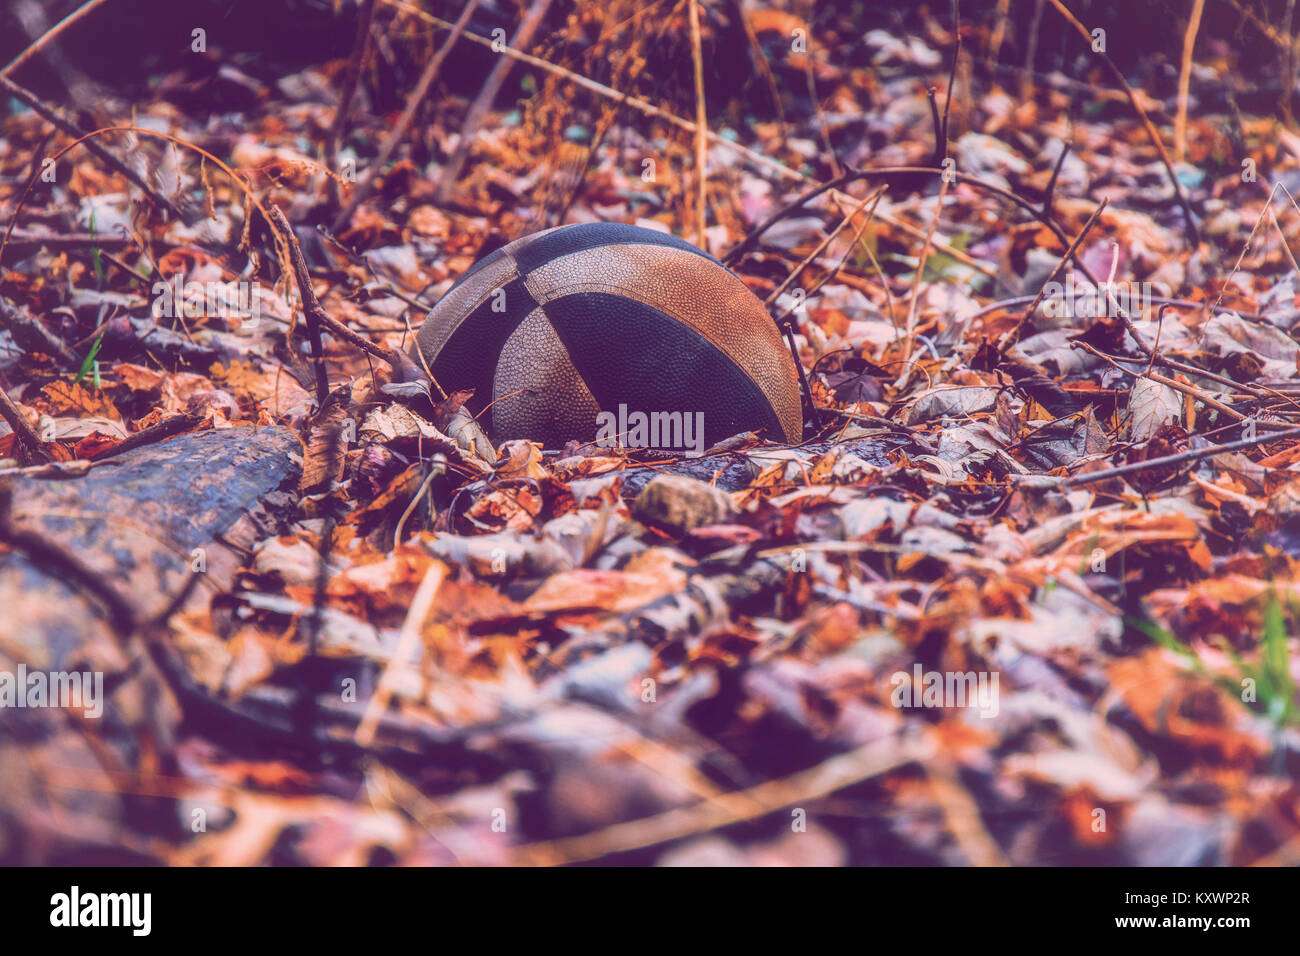 Wanderung durch den Wald und sah diese alte Basketball in den Blättern liegen auf dem Waldboden. Stockfoto